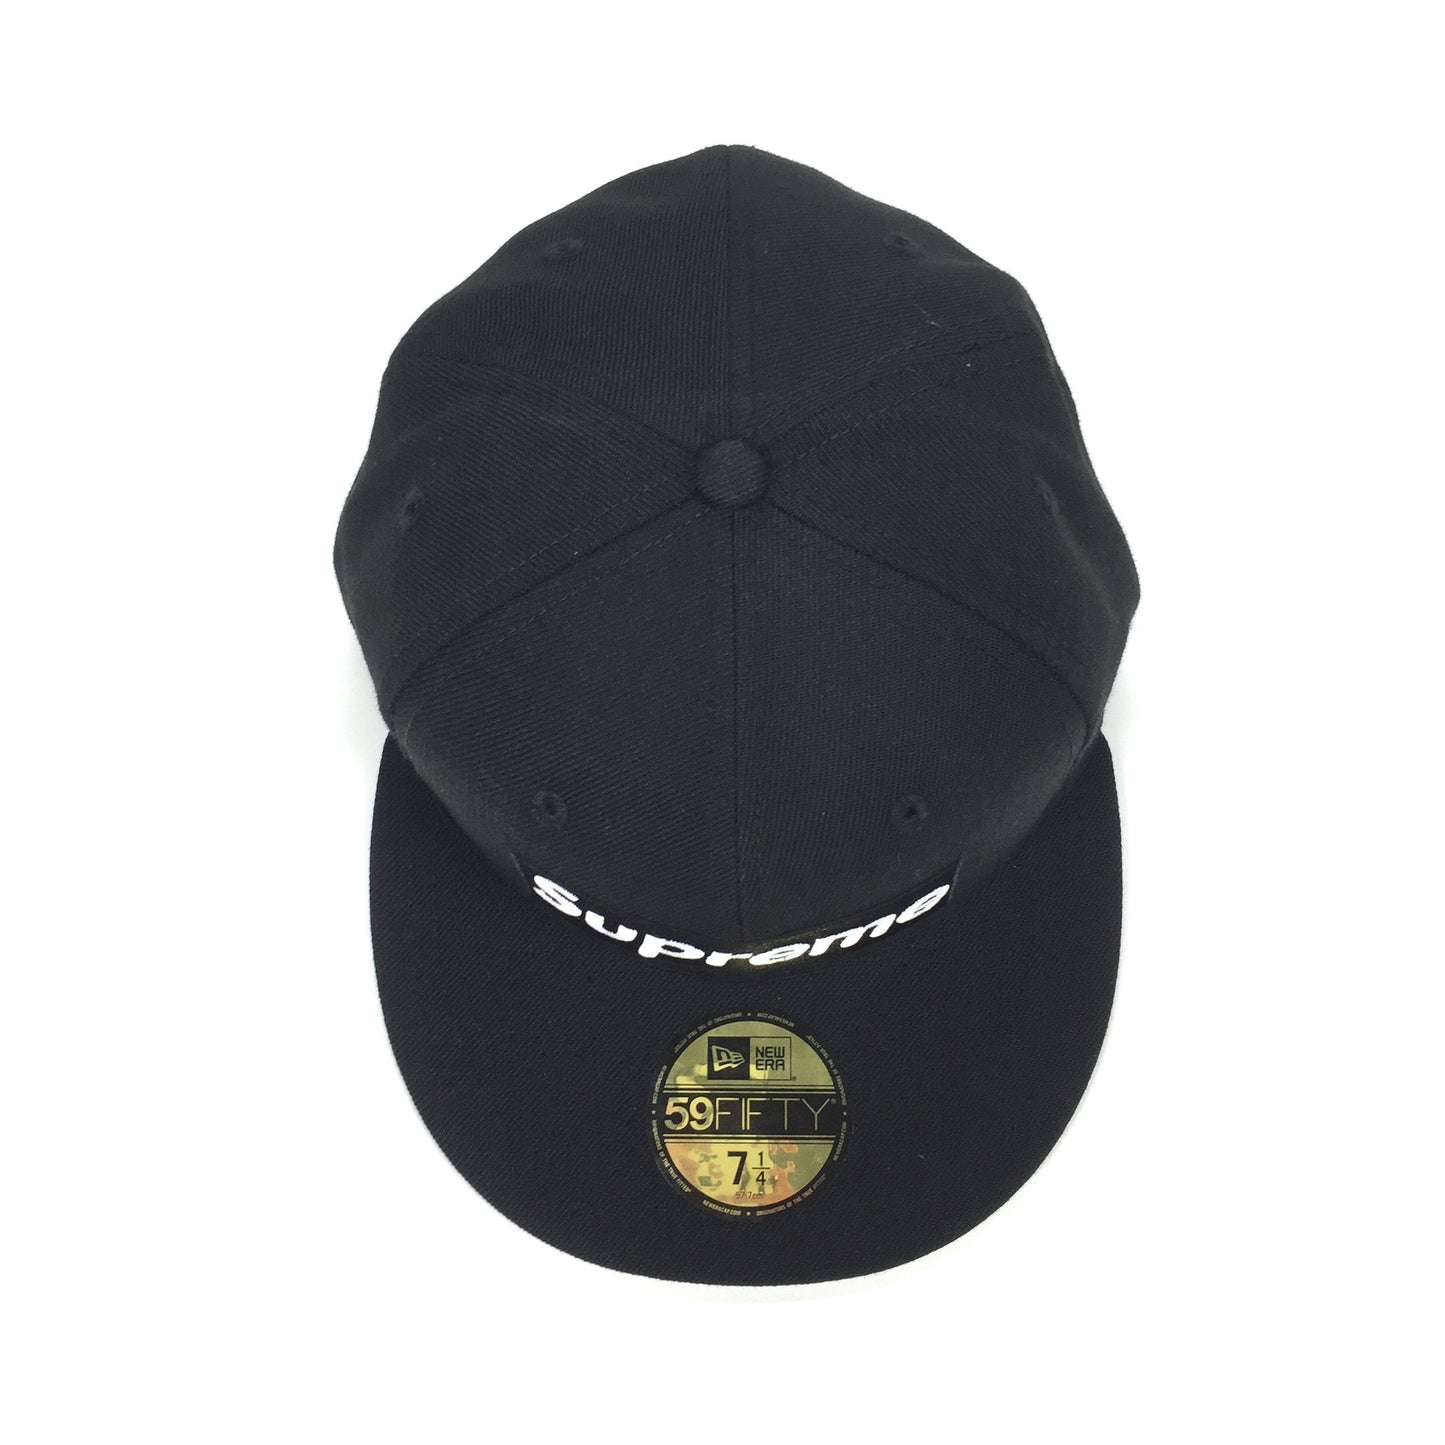 Supreme x New Era - Black Playboy Box Logo Hat